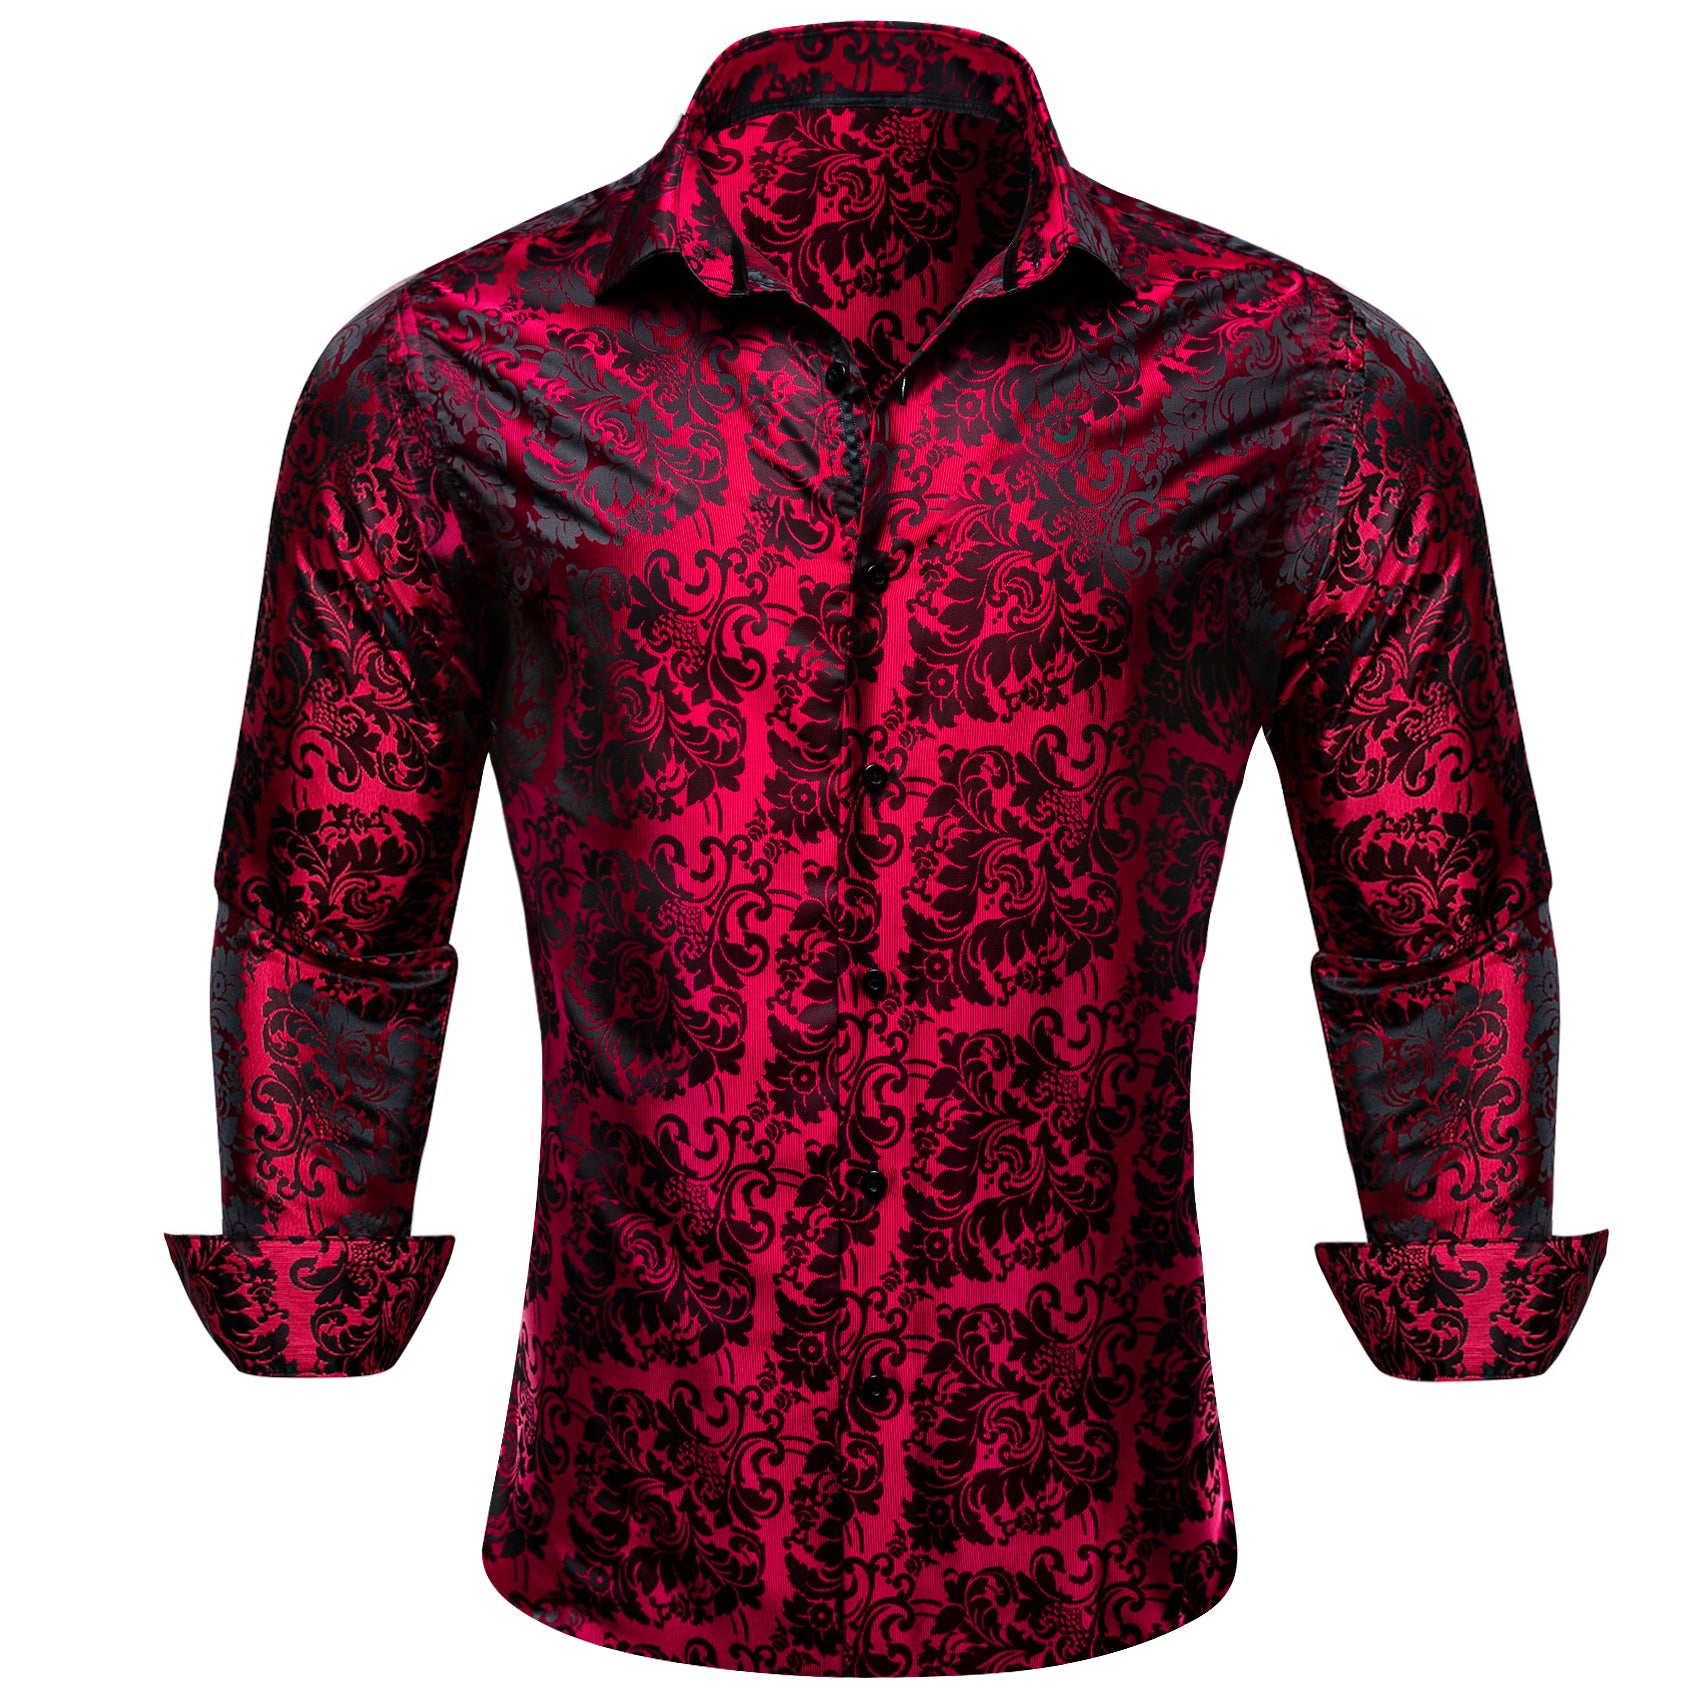 Barry.wang Button Down Shirt Red Black Floral Dress Silk Shirt for Men